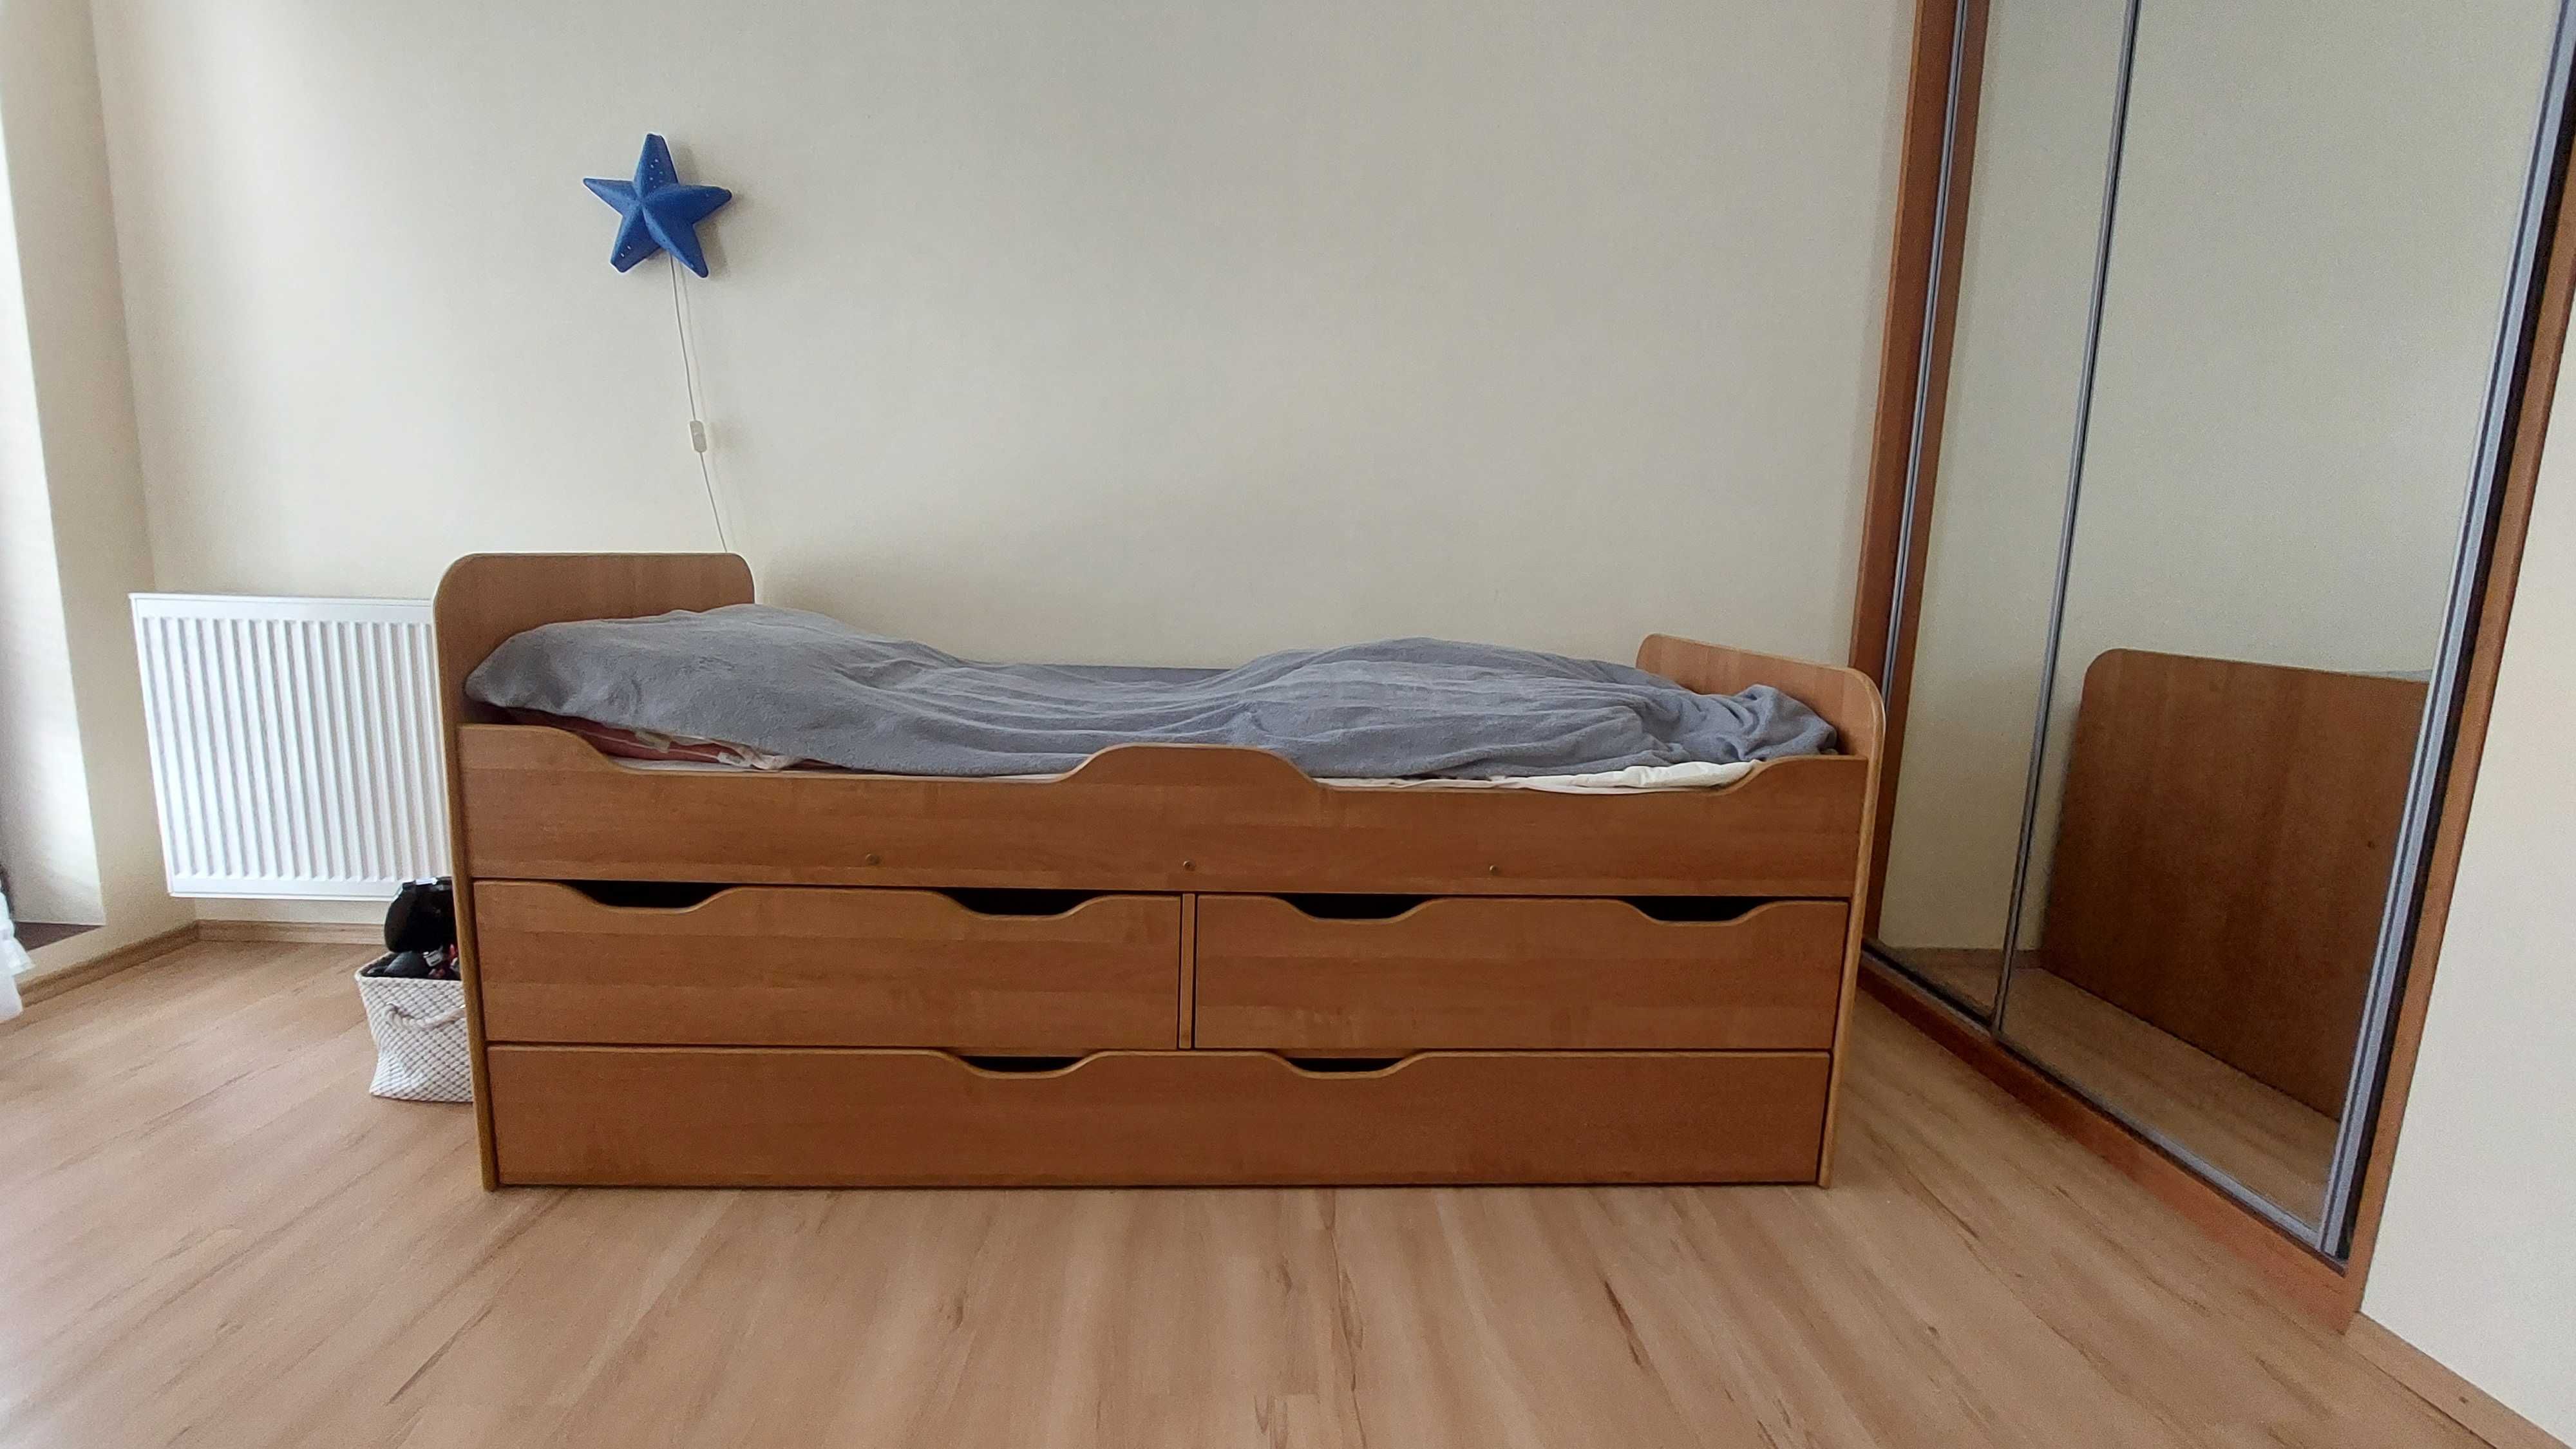 łóżko - jedno lub dwu osobowe z pojemnymi szufladami